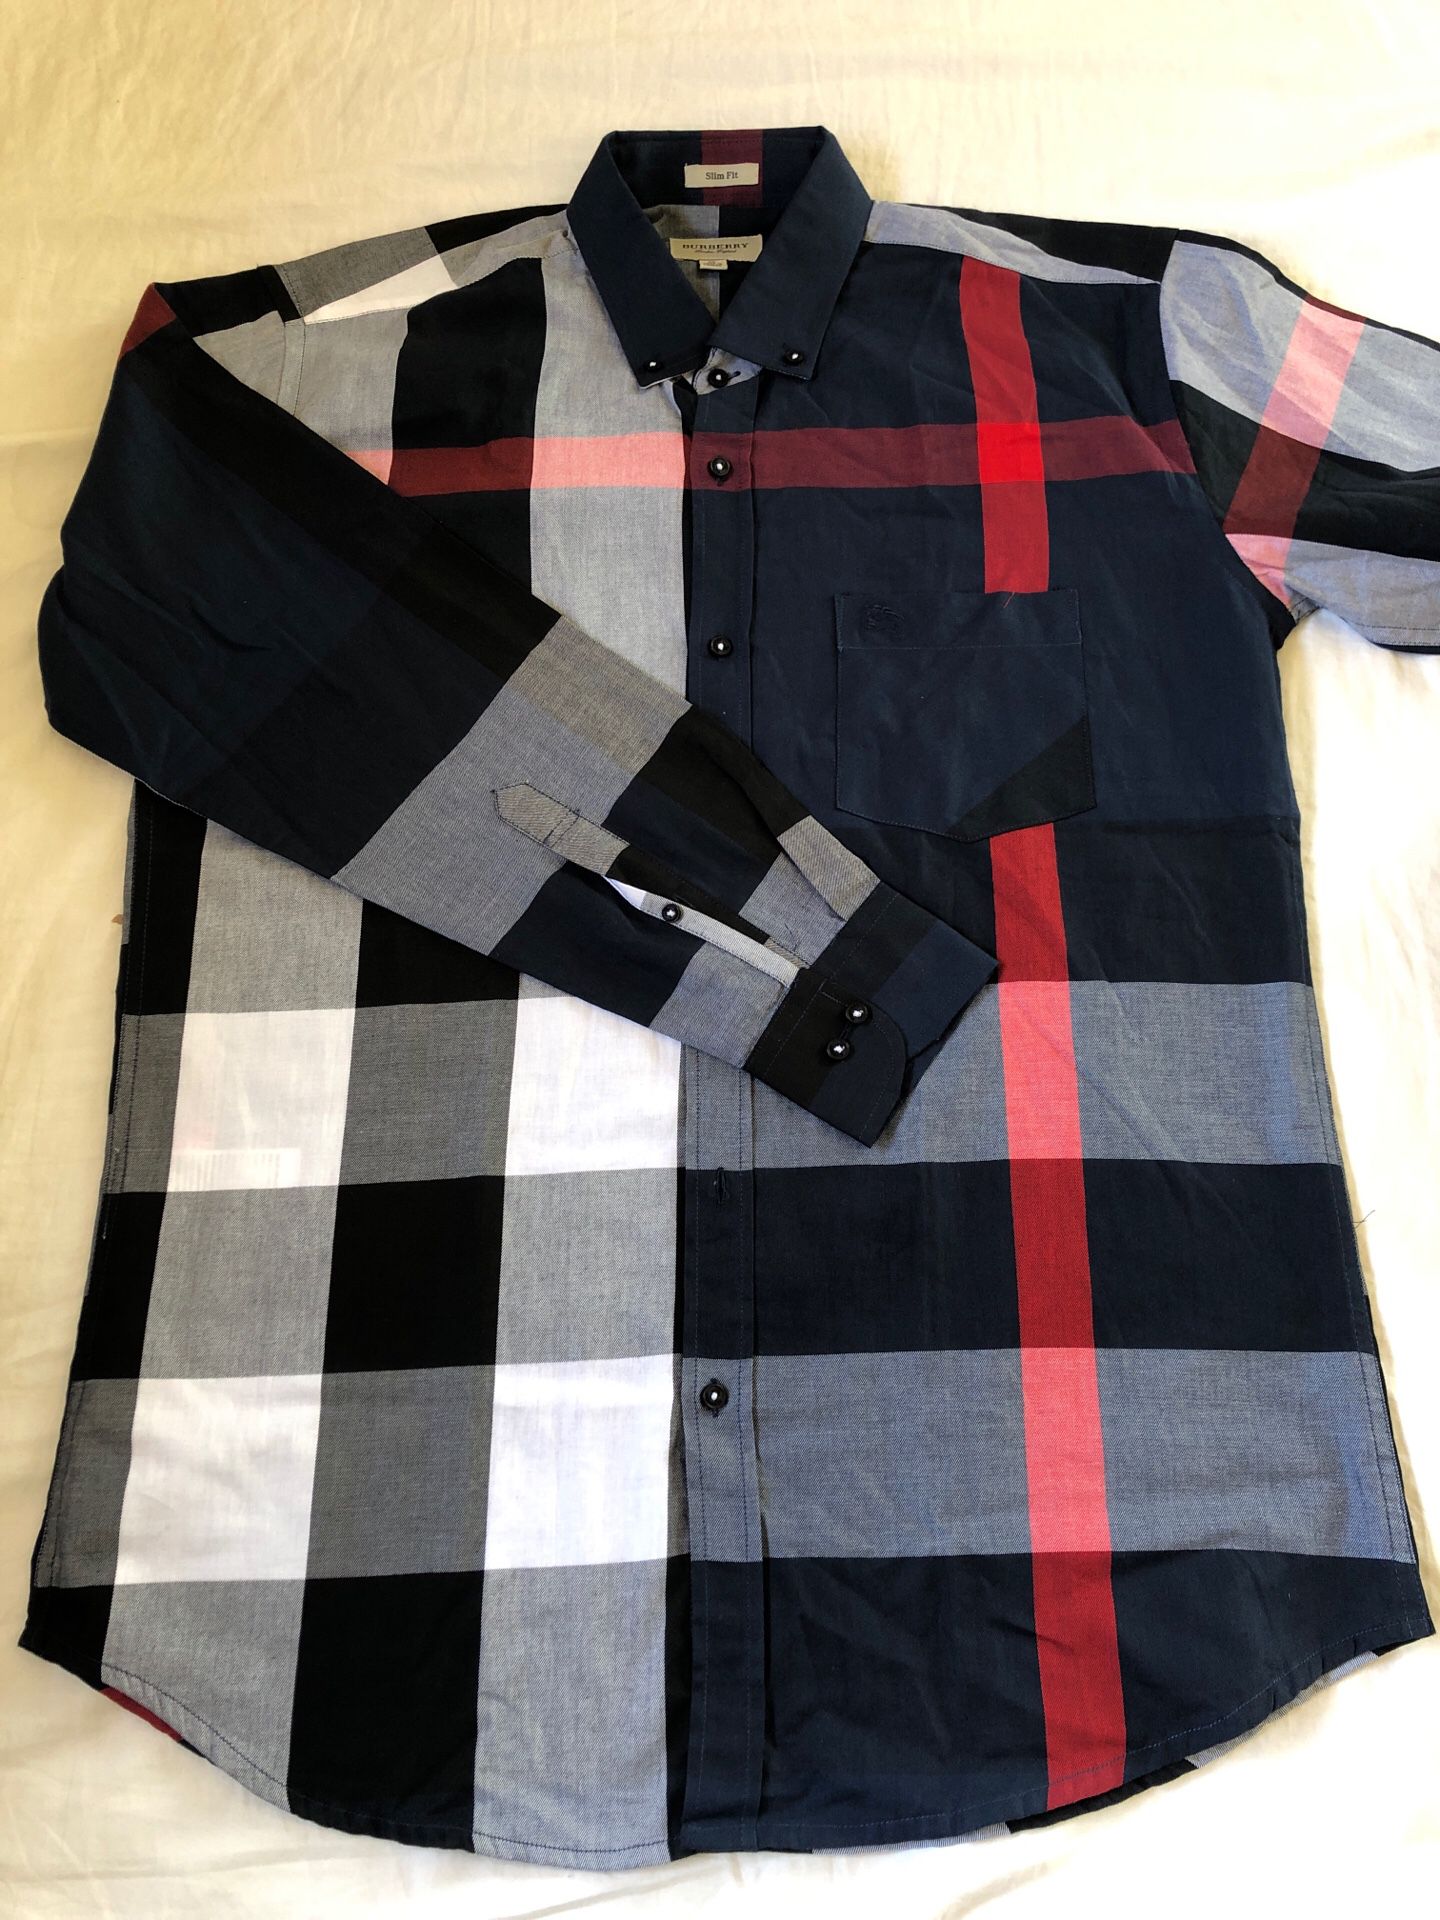 Burberry men’s shirt size XL